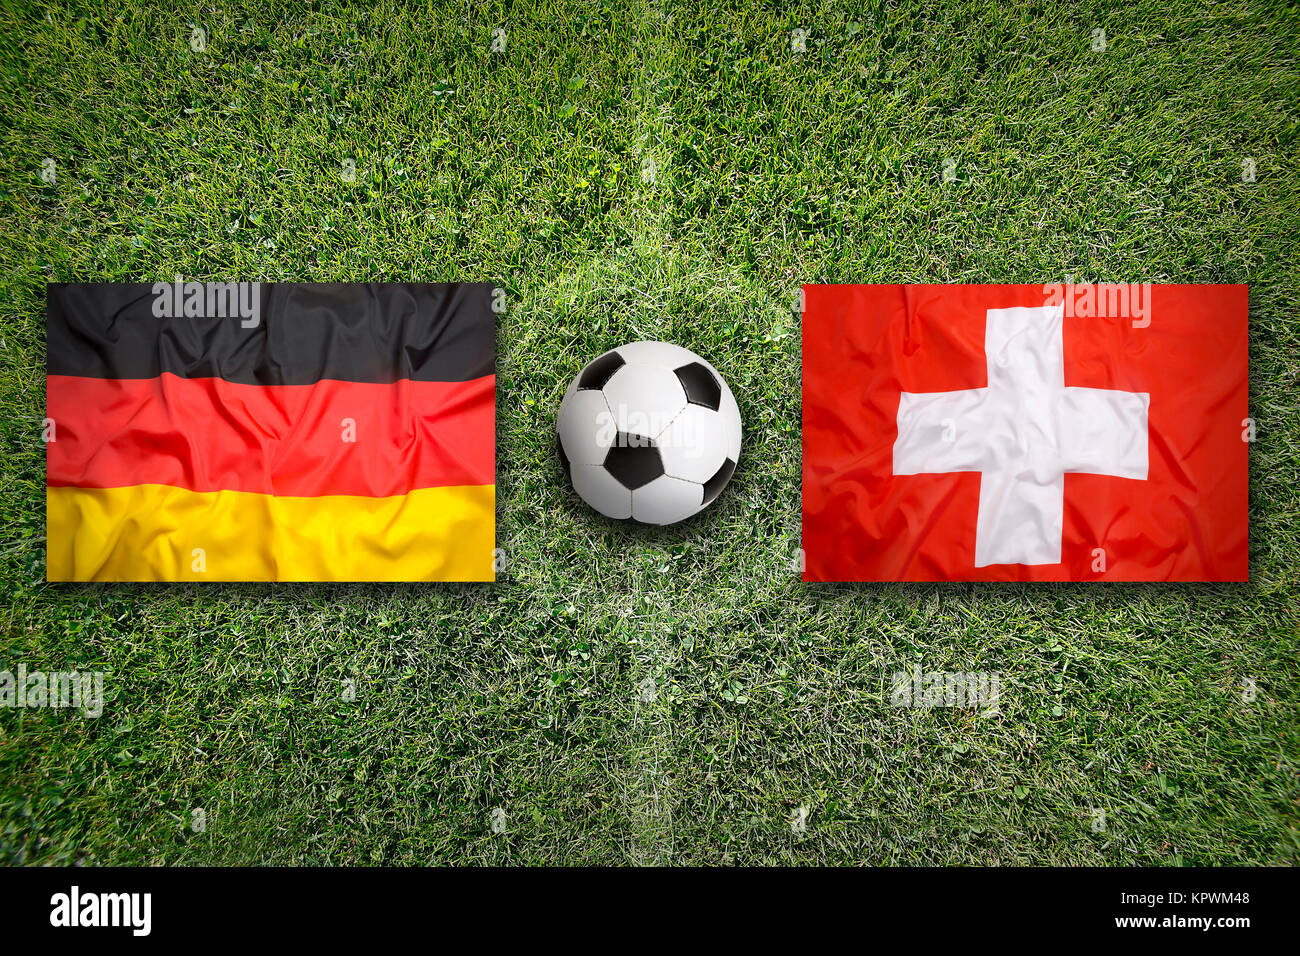 Germany Vs Switzerland Flags On Soccer Field KPWM48 